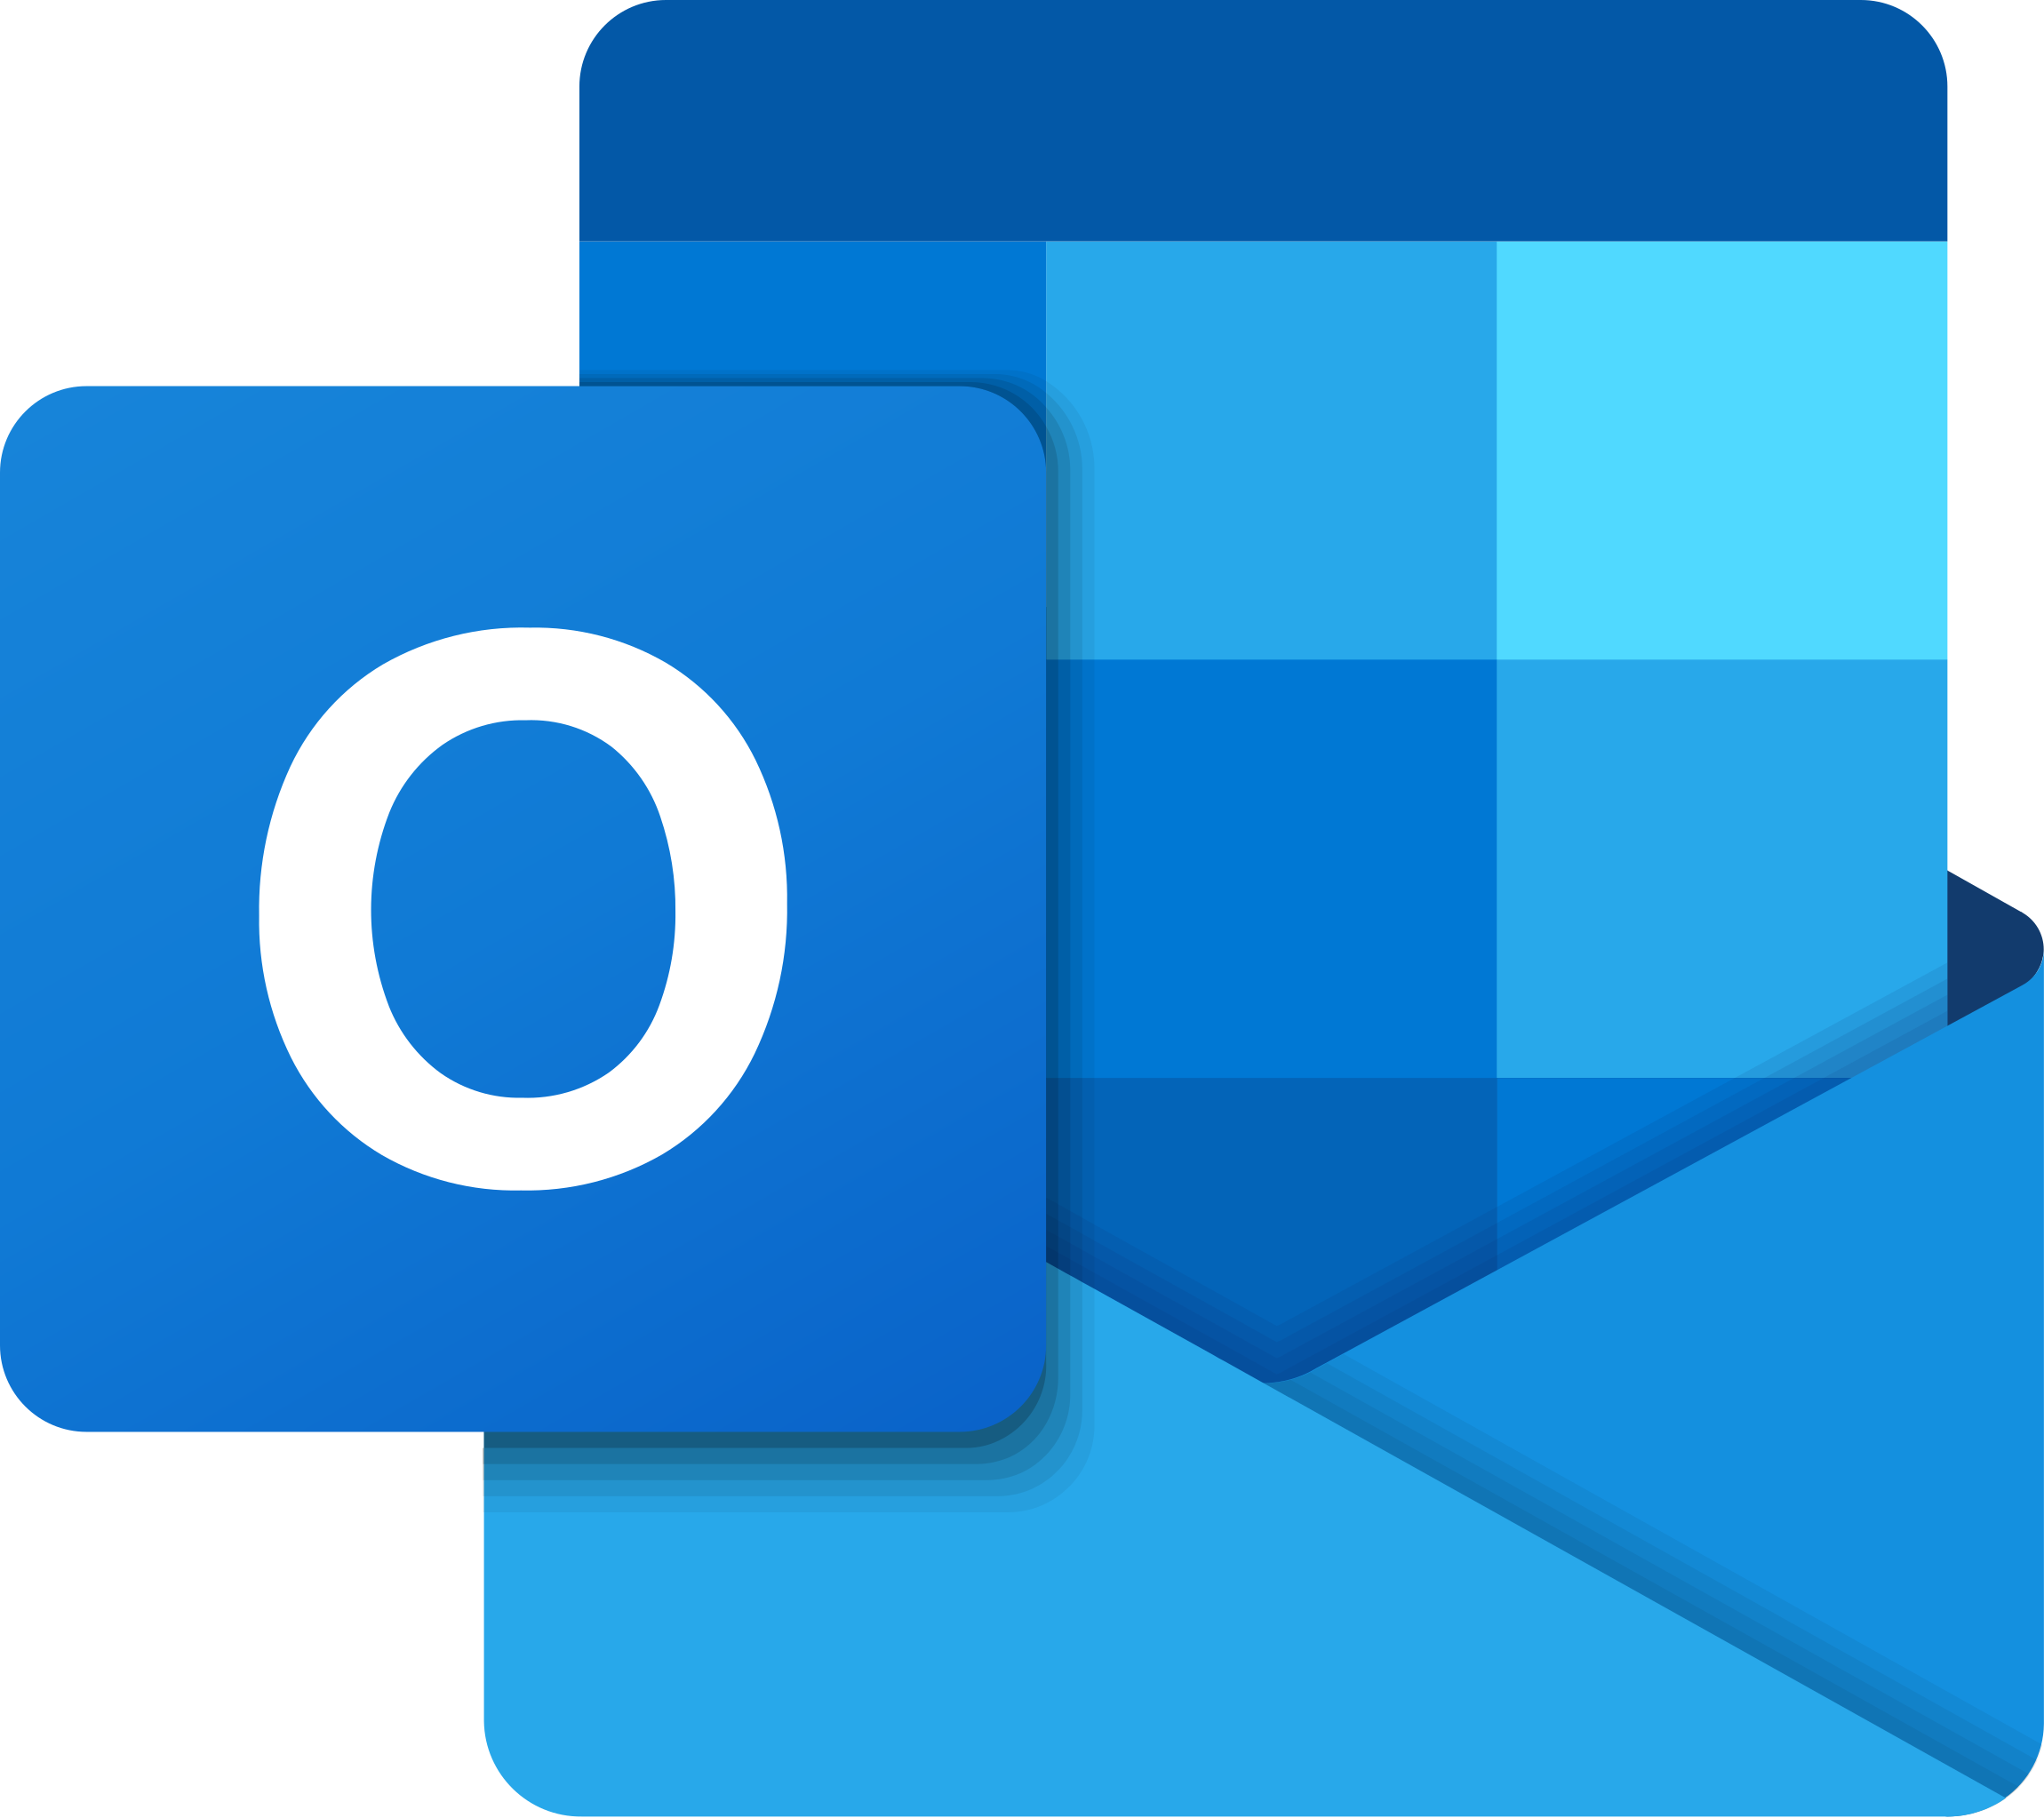 Download Microsoft Outlook 2019 Terbaru